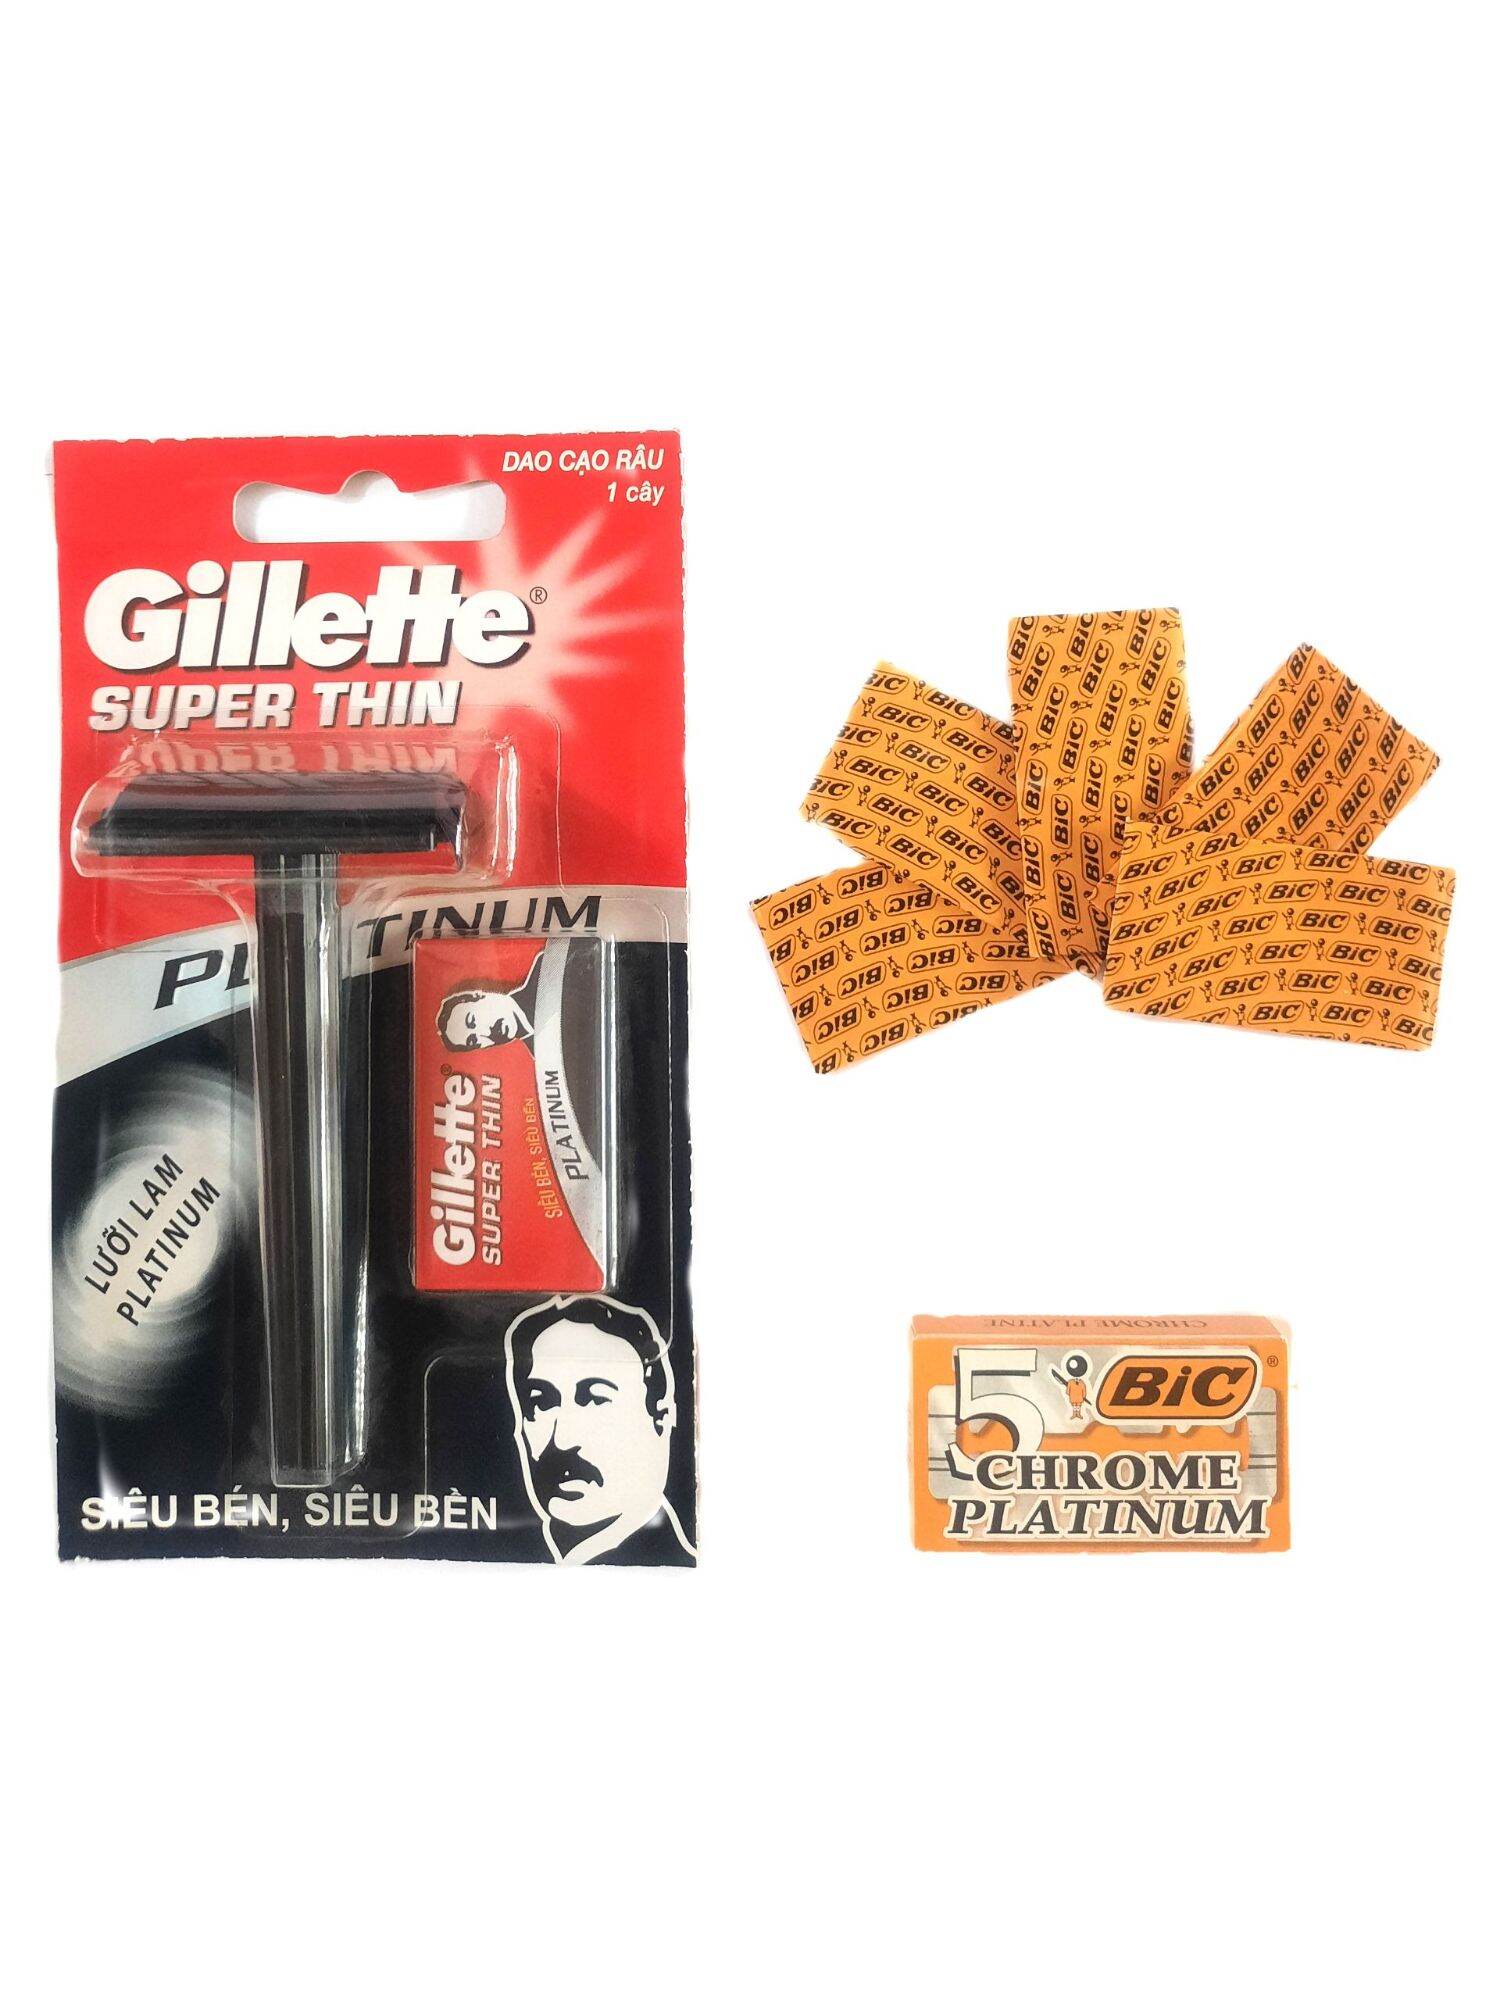 Combo cạo râu Gillette + hộp lưỡi lam Bic 5 cái siêu bén giá rẻ